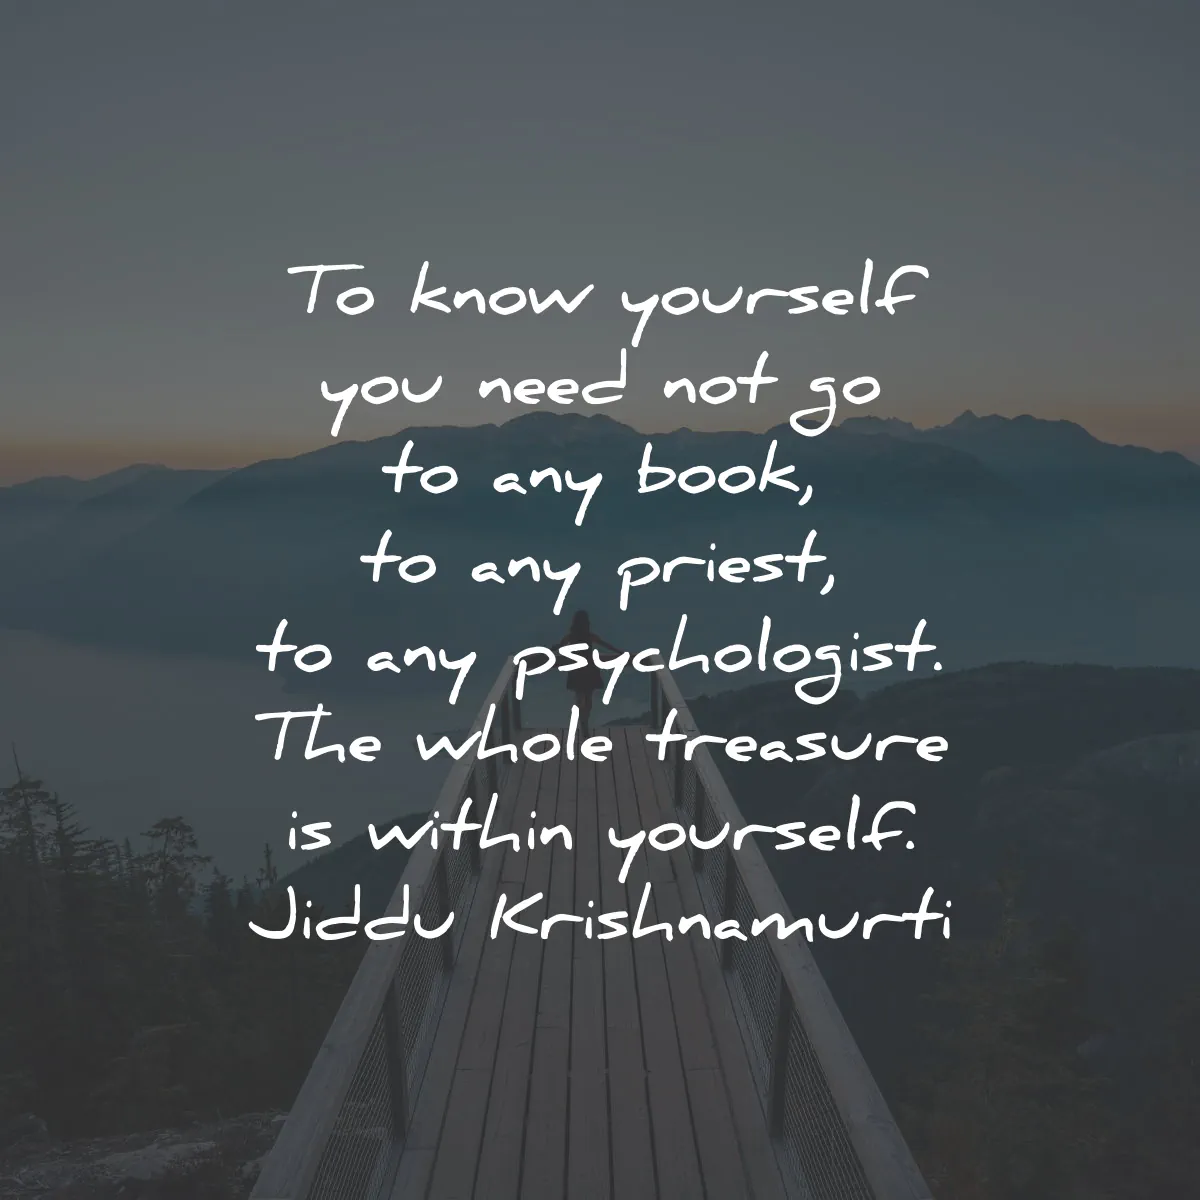 jiddu krishnamurti quotes know yourself book priest yourself wisdom